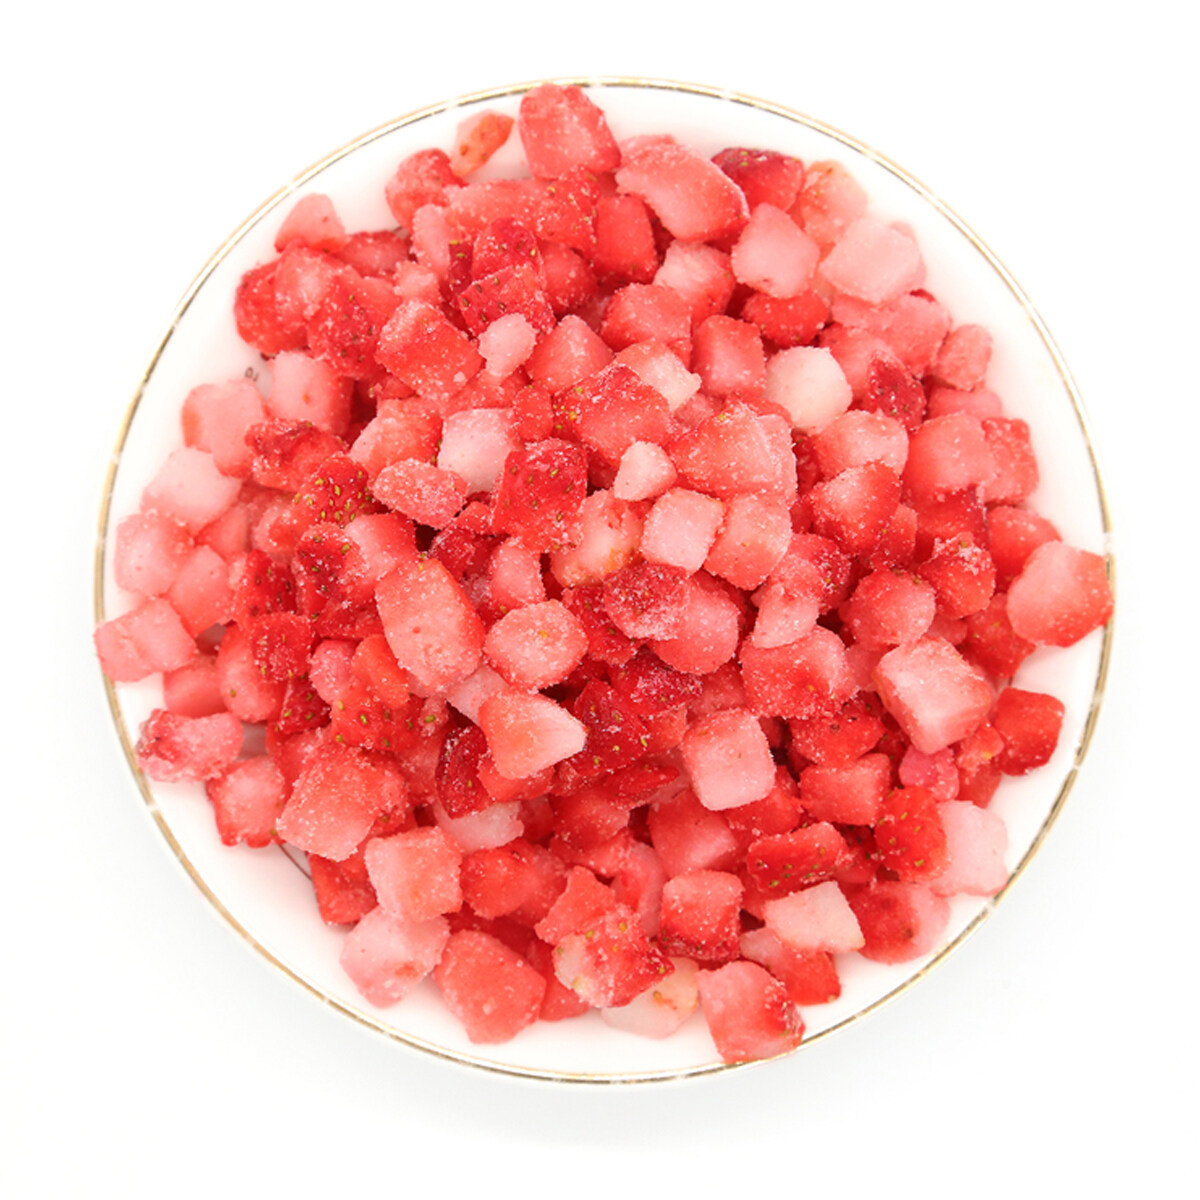 Wholesale frozen leek strawberry, sliced frozen strawberries OEM, frozen whole strawberry, High Quality frozen strawberri, frozen strawberry dices ODM